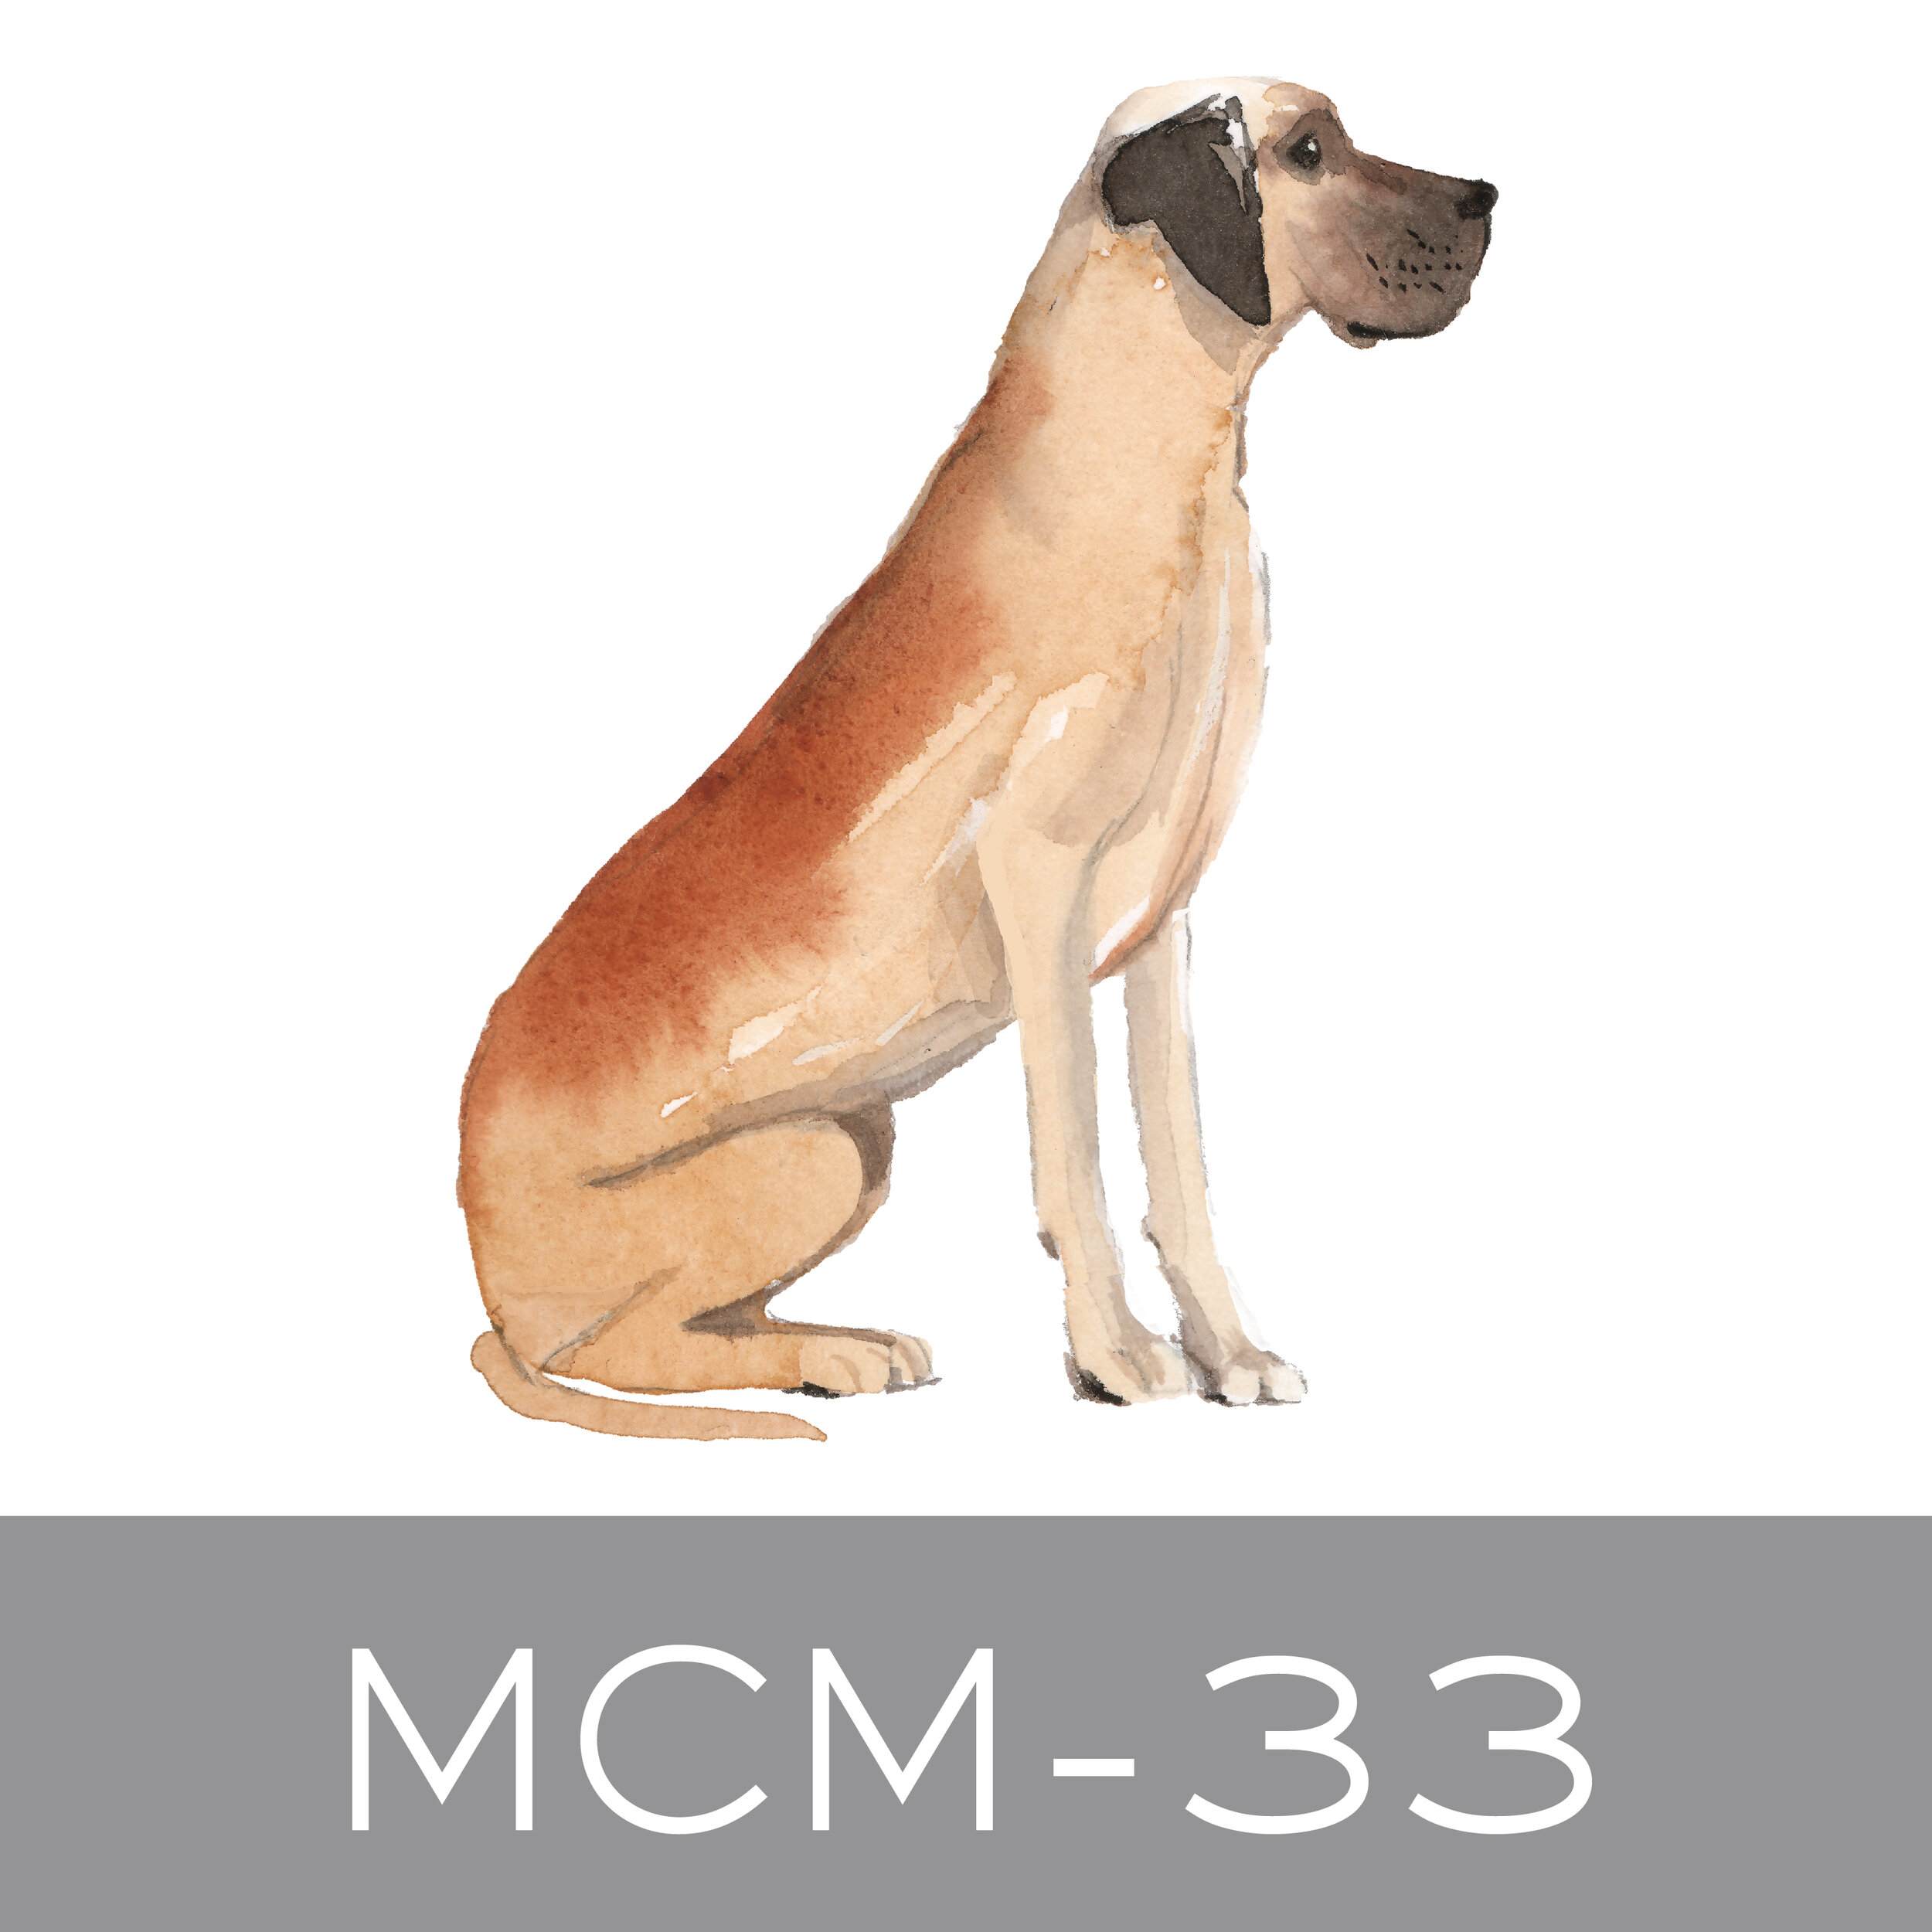 MCM-33.jpg